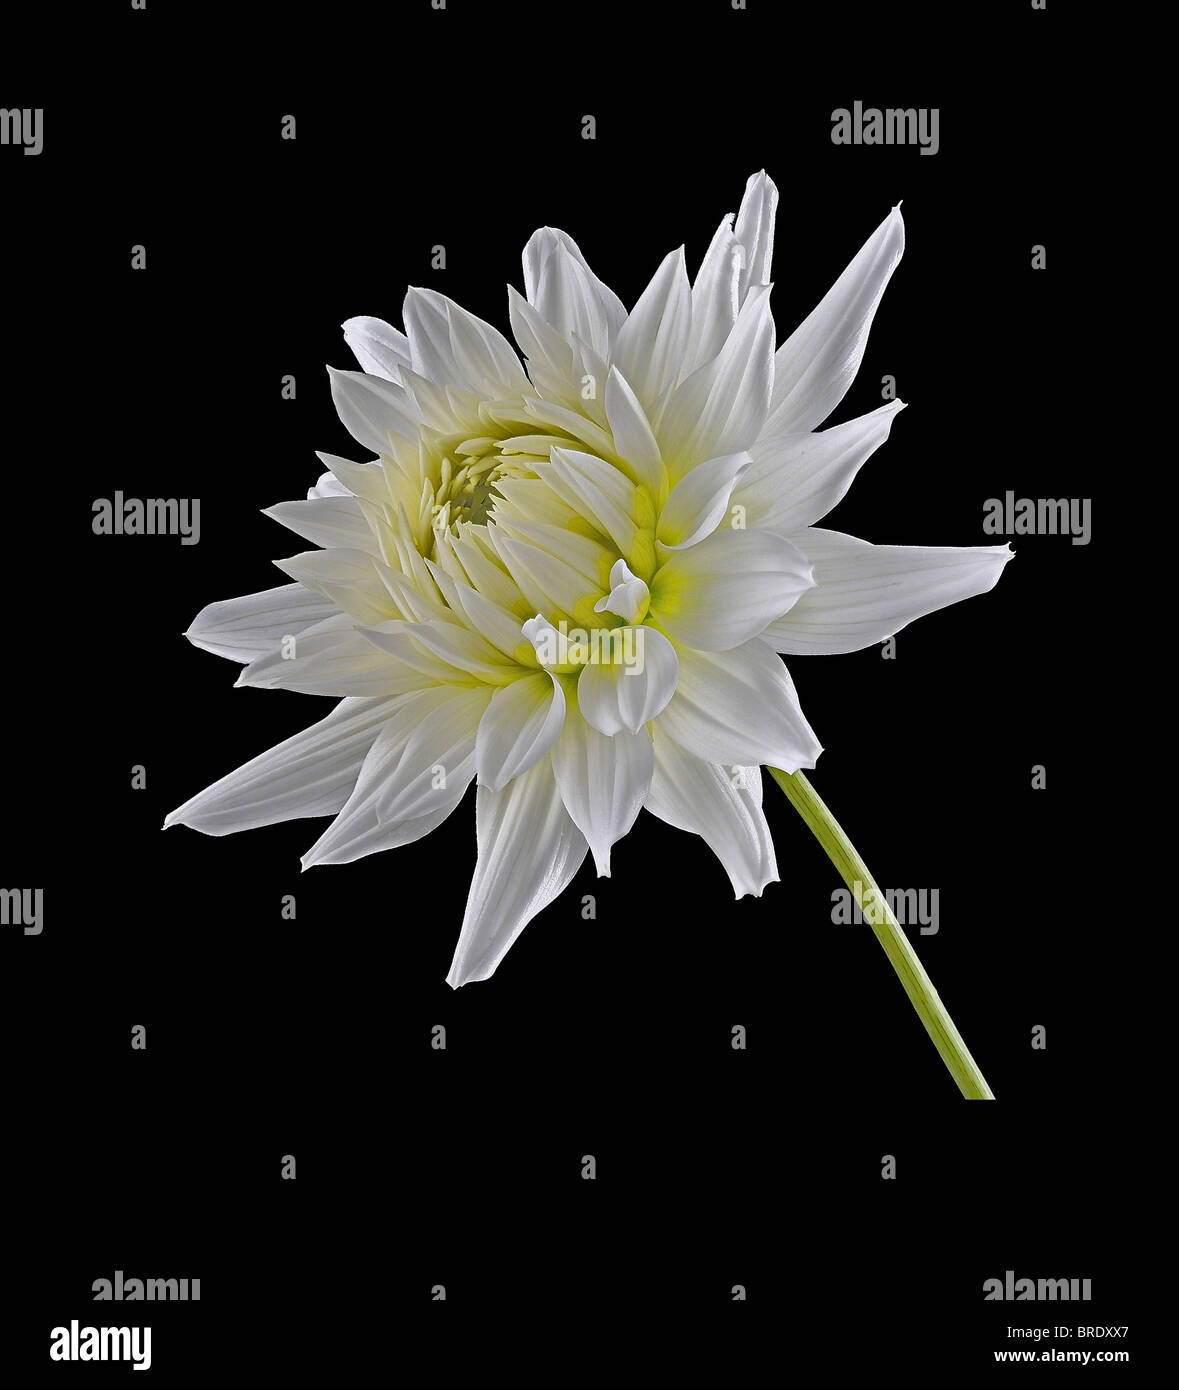 Weiße Dahlie (Asteraceae) - Studio-Bild Stockfoto